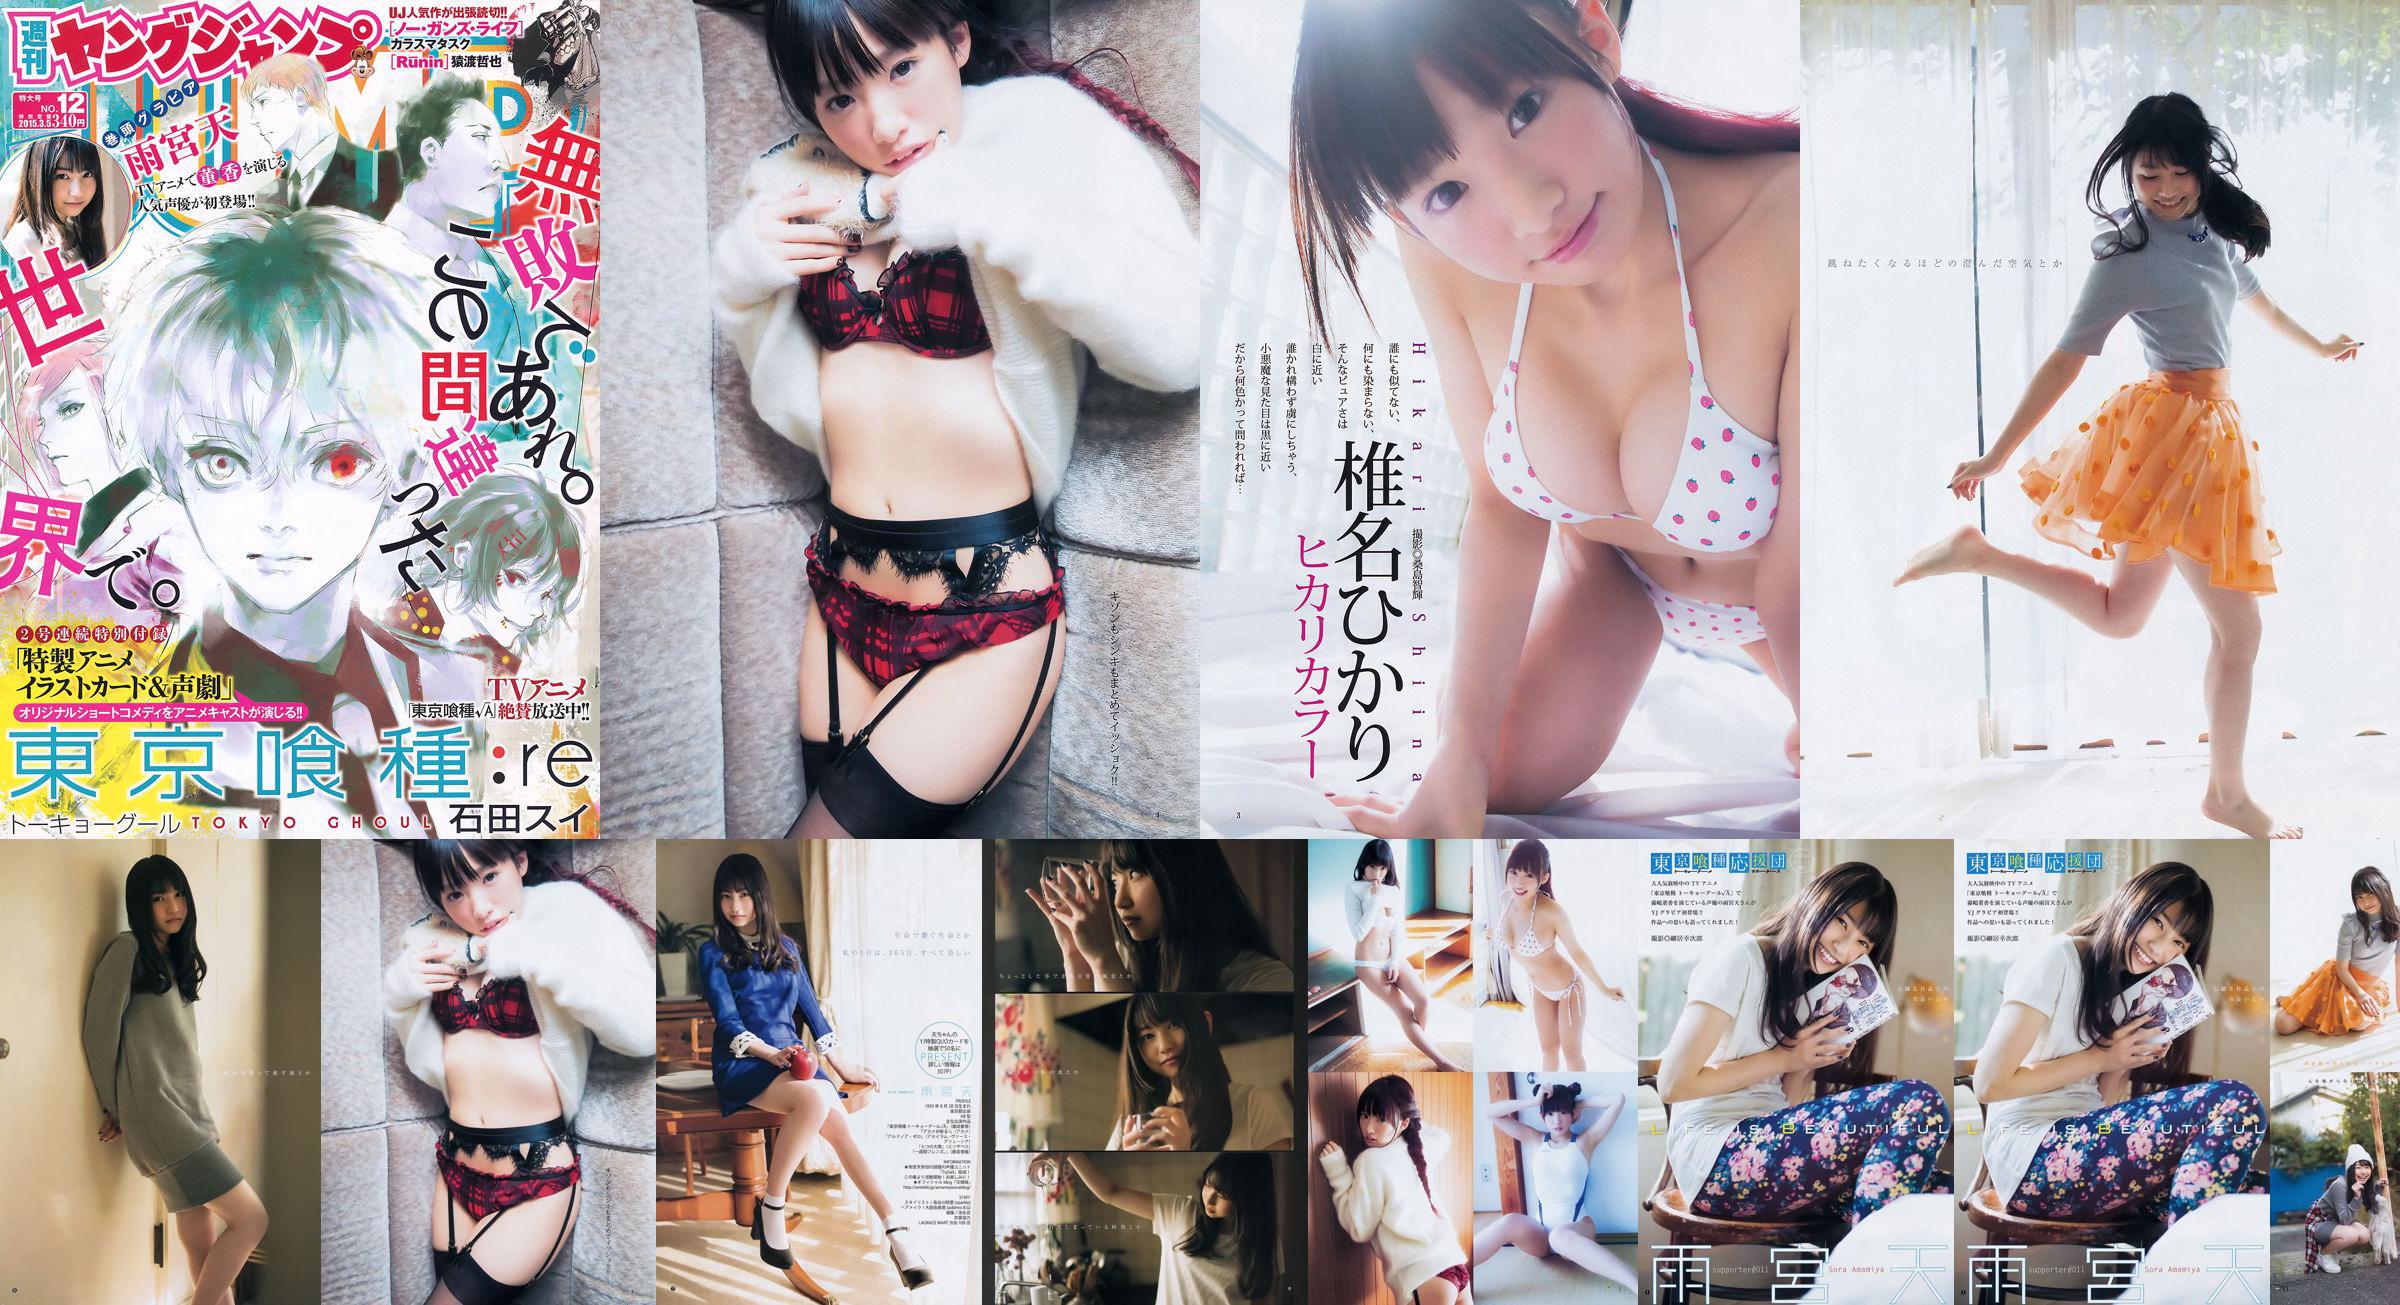 Amamiya Tian Shiina ひかり [Weekly Young Jump] 2015 No.12 Photo Magazine No.7f466b Página 7